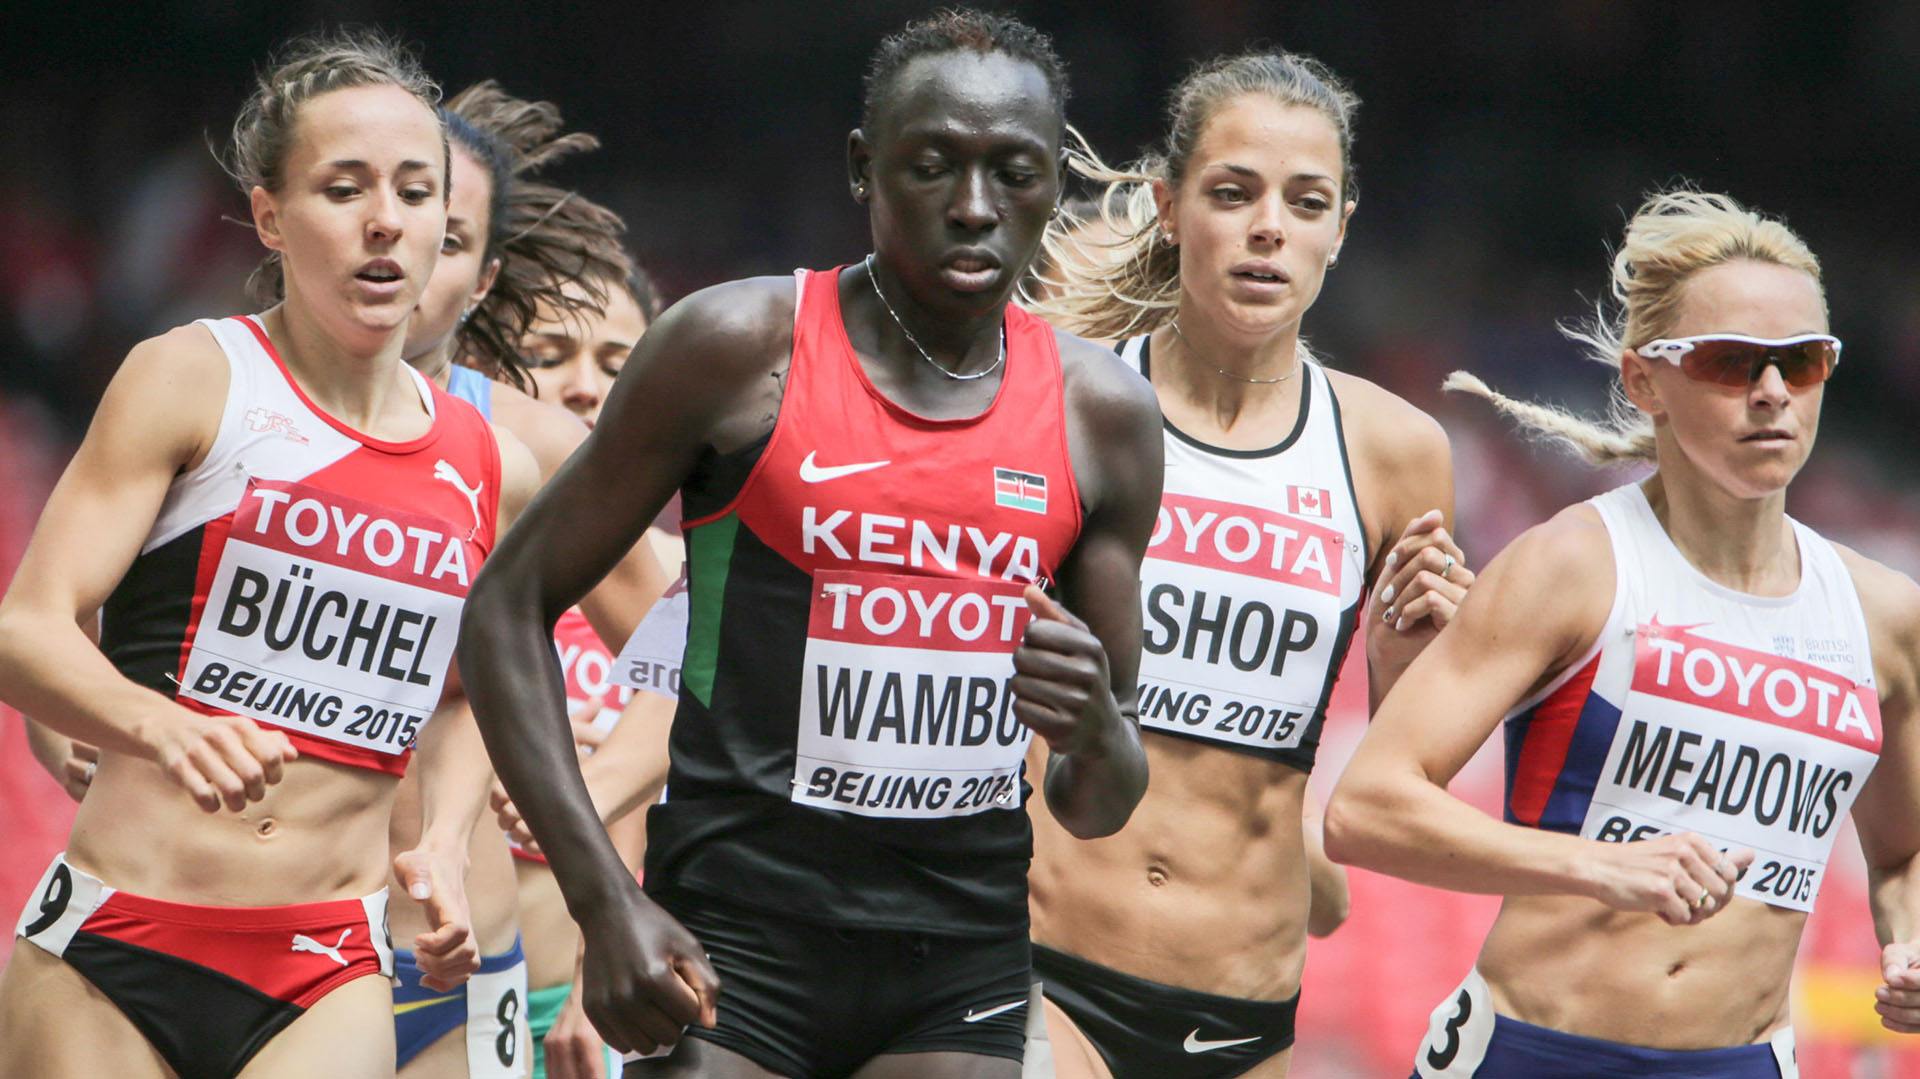 (Grosby) Margaret Wambui también corrió sus últimos 800 metros antes del cambio reglamentario